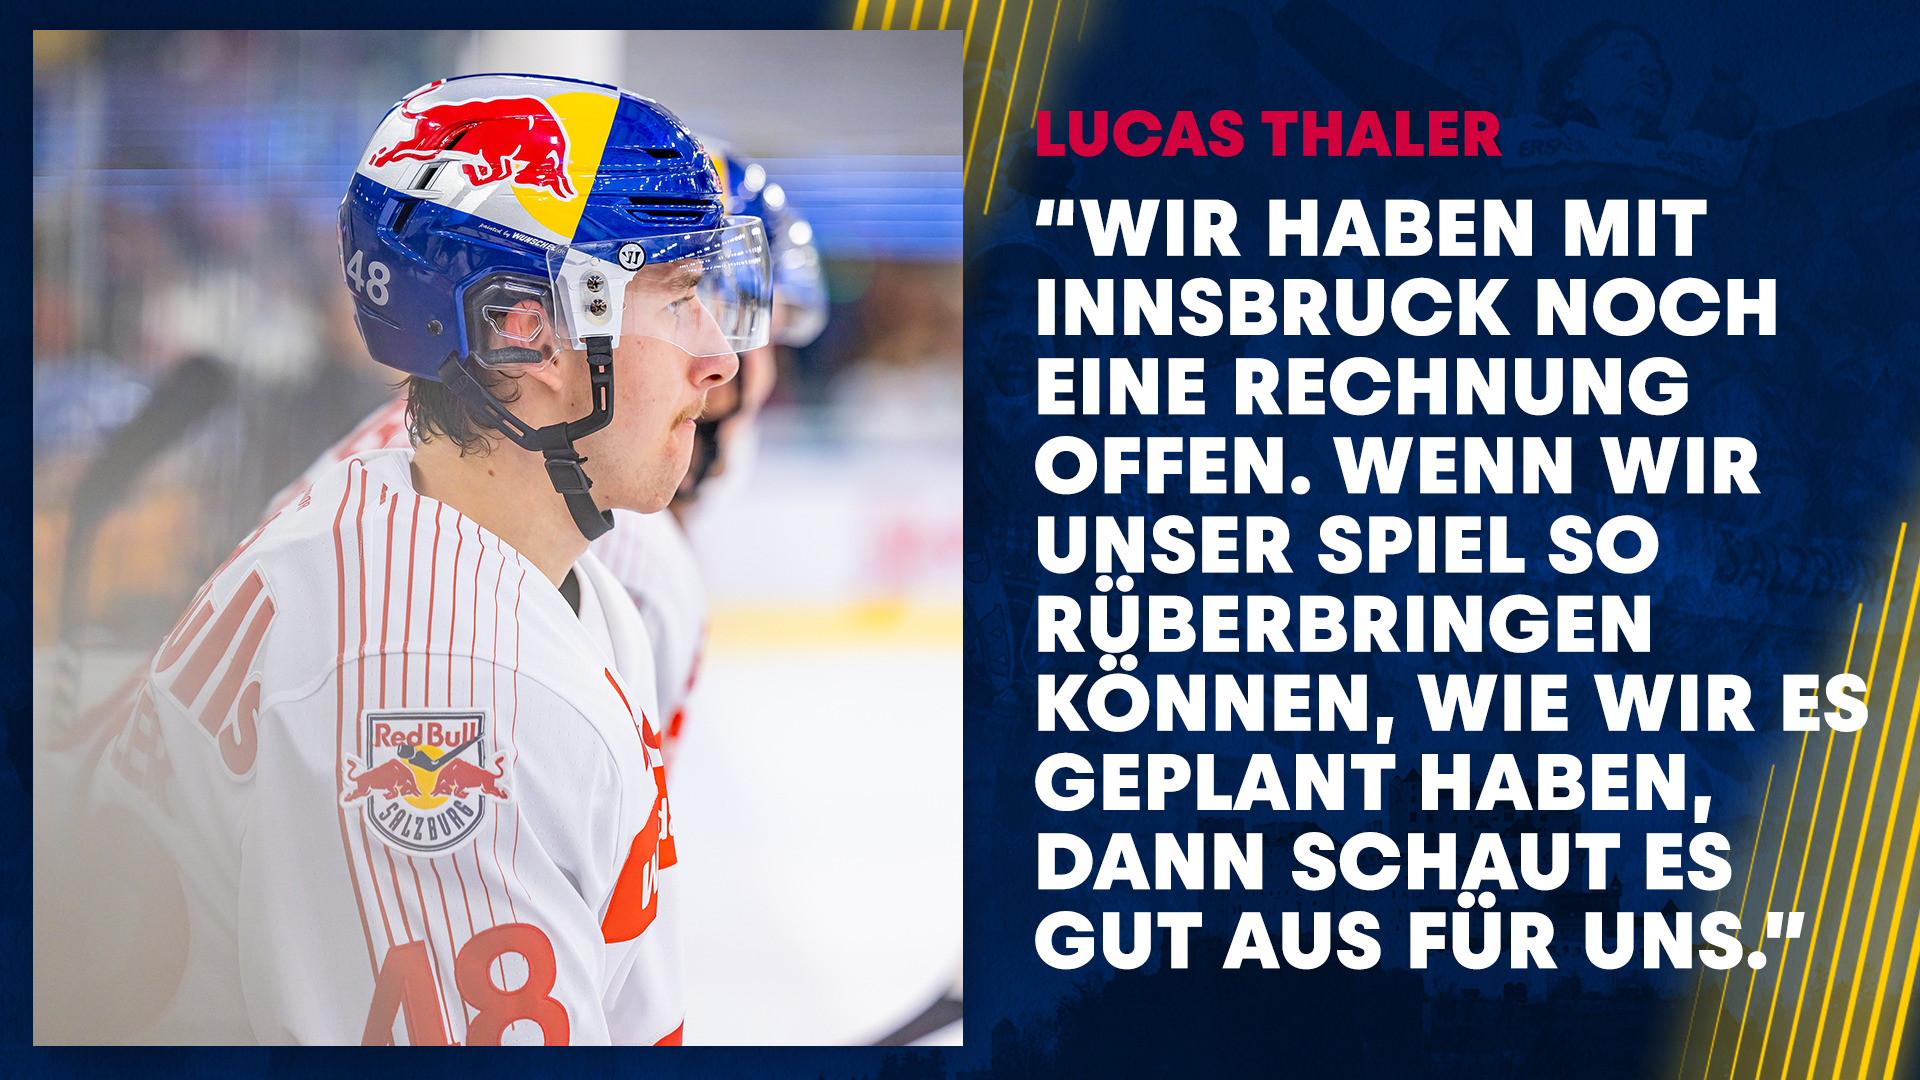 Statement: Lucas Thaler